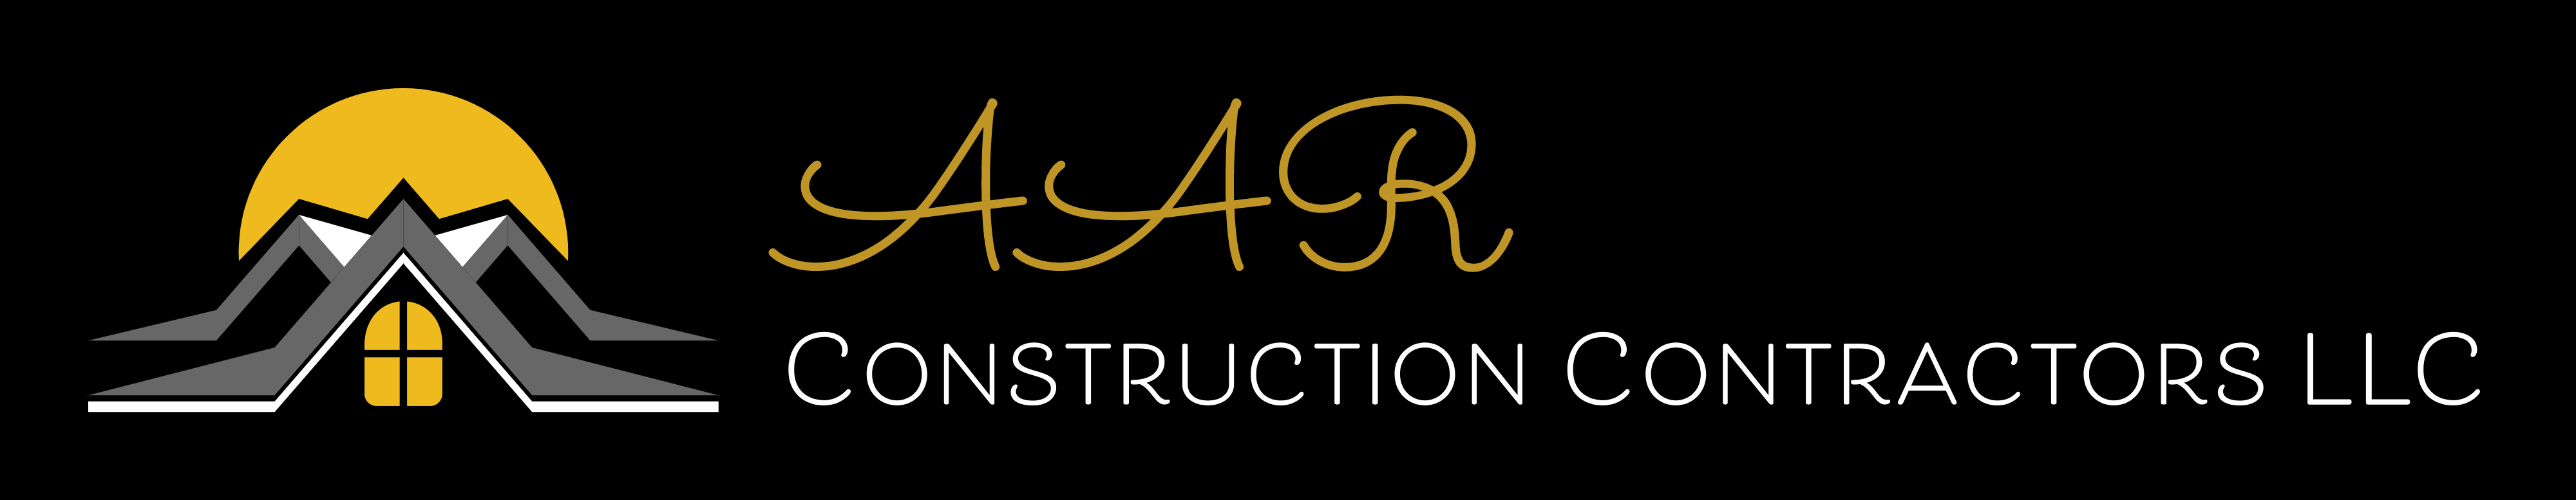 AAR Construction Contractors Logo